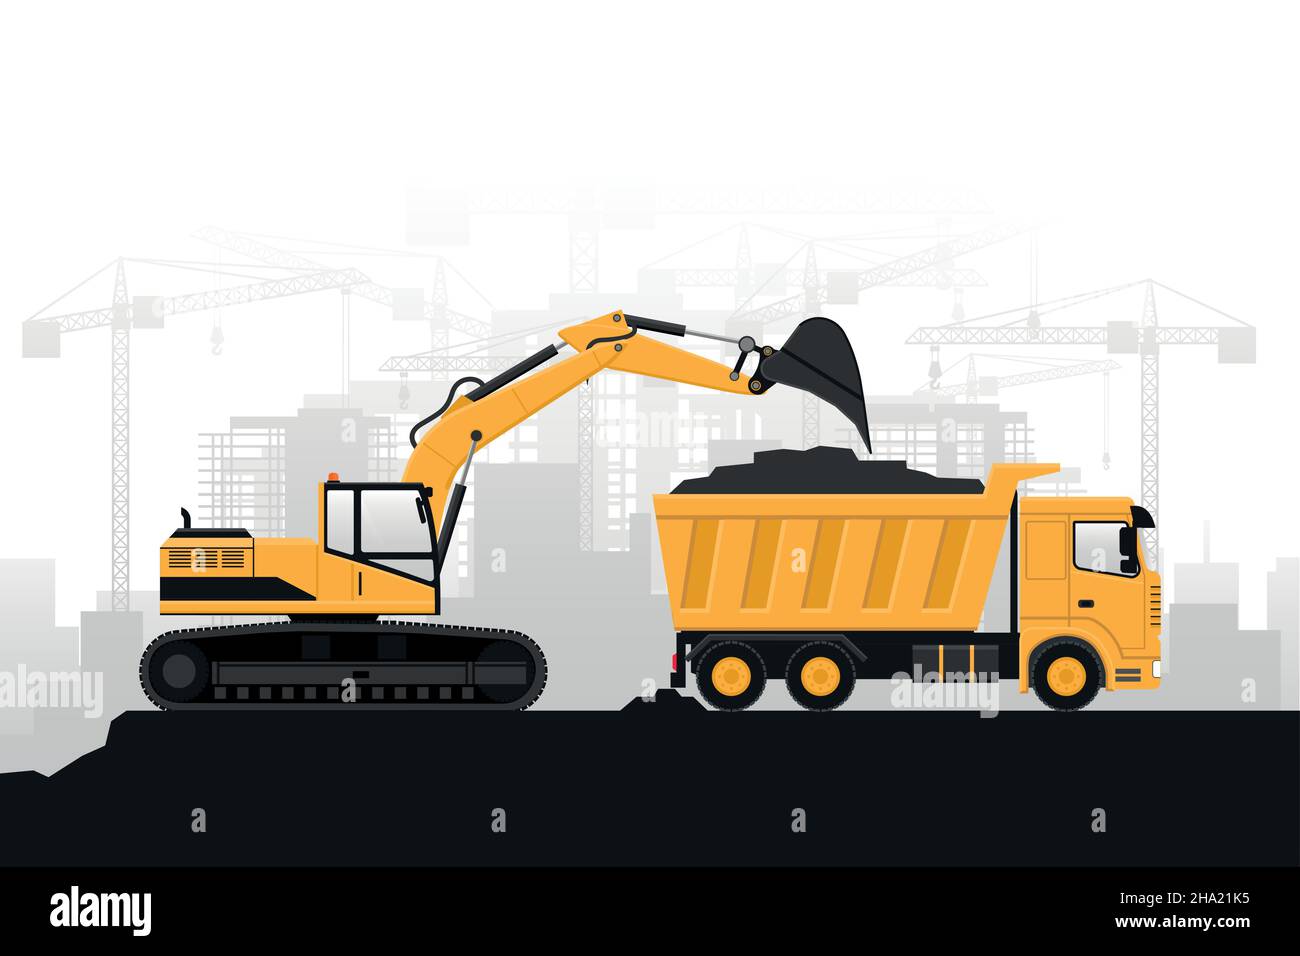 Costruzione di edifici con macchinari pesanti, escavatori gommati che riempiono un camion su sfondo grigio Illustrazione Vettoriale